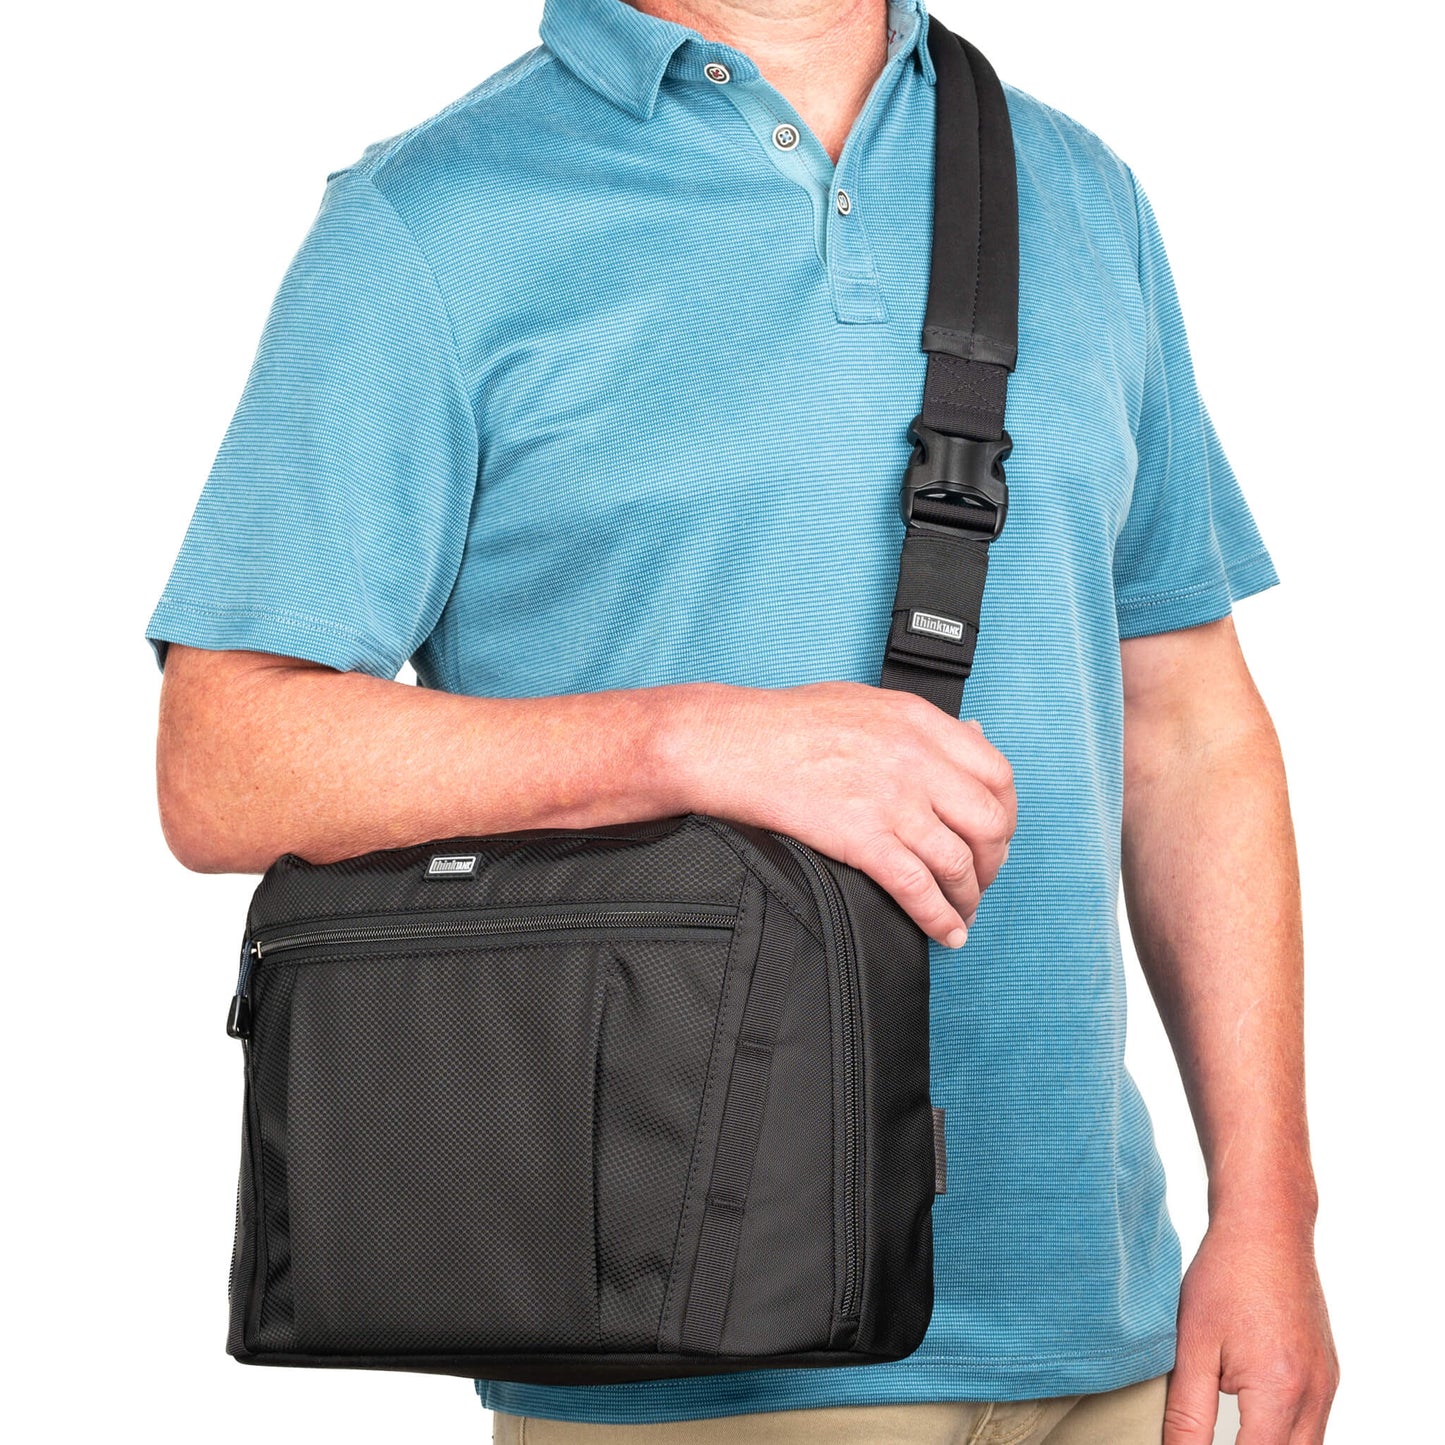 Shoulder bag crossbody position